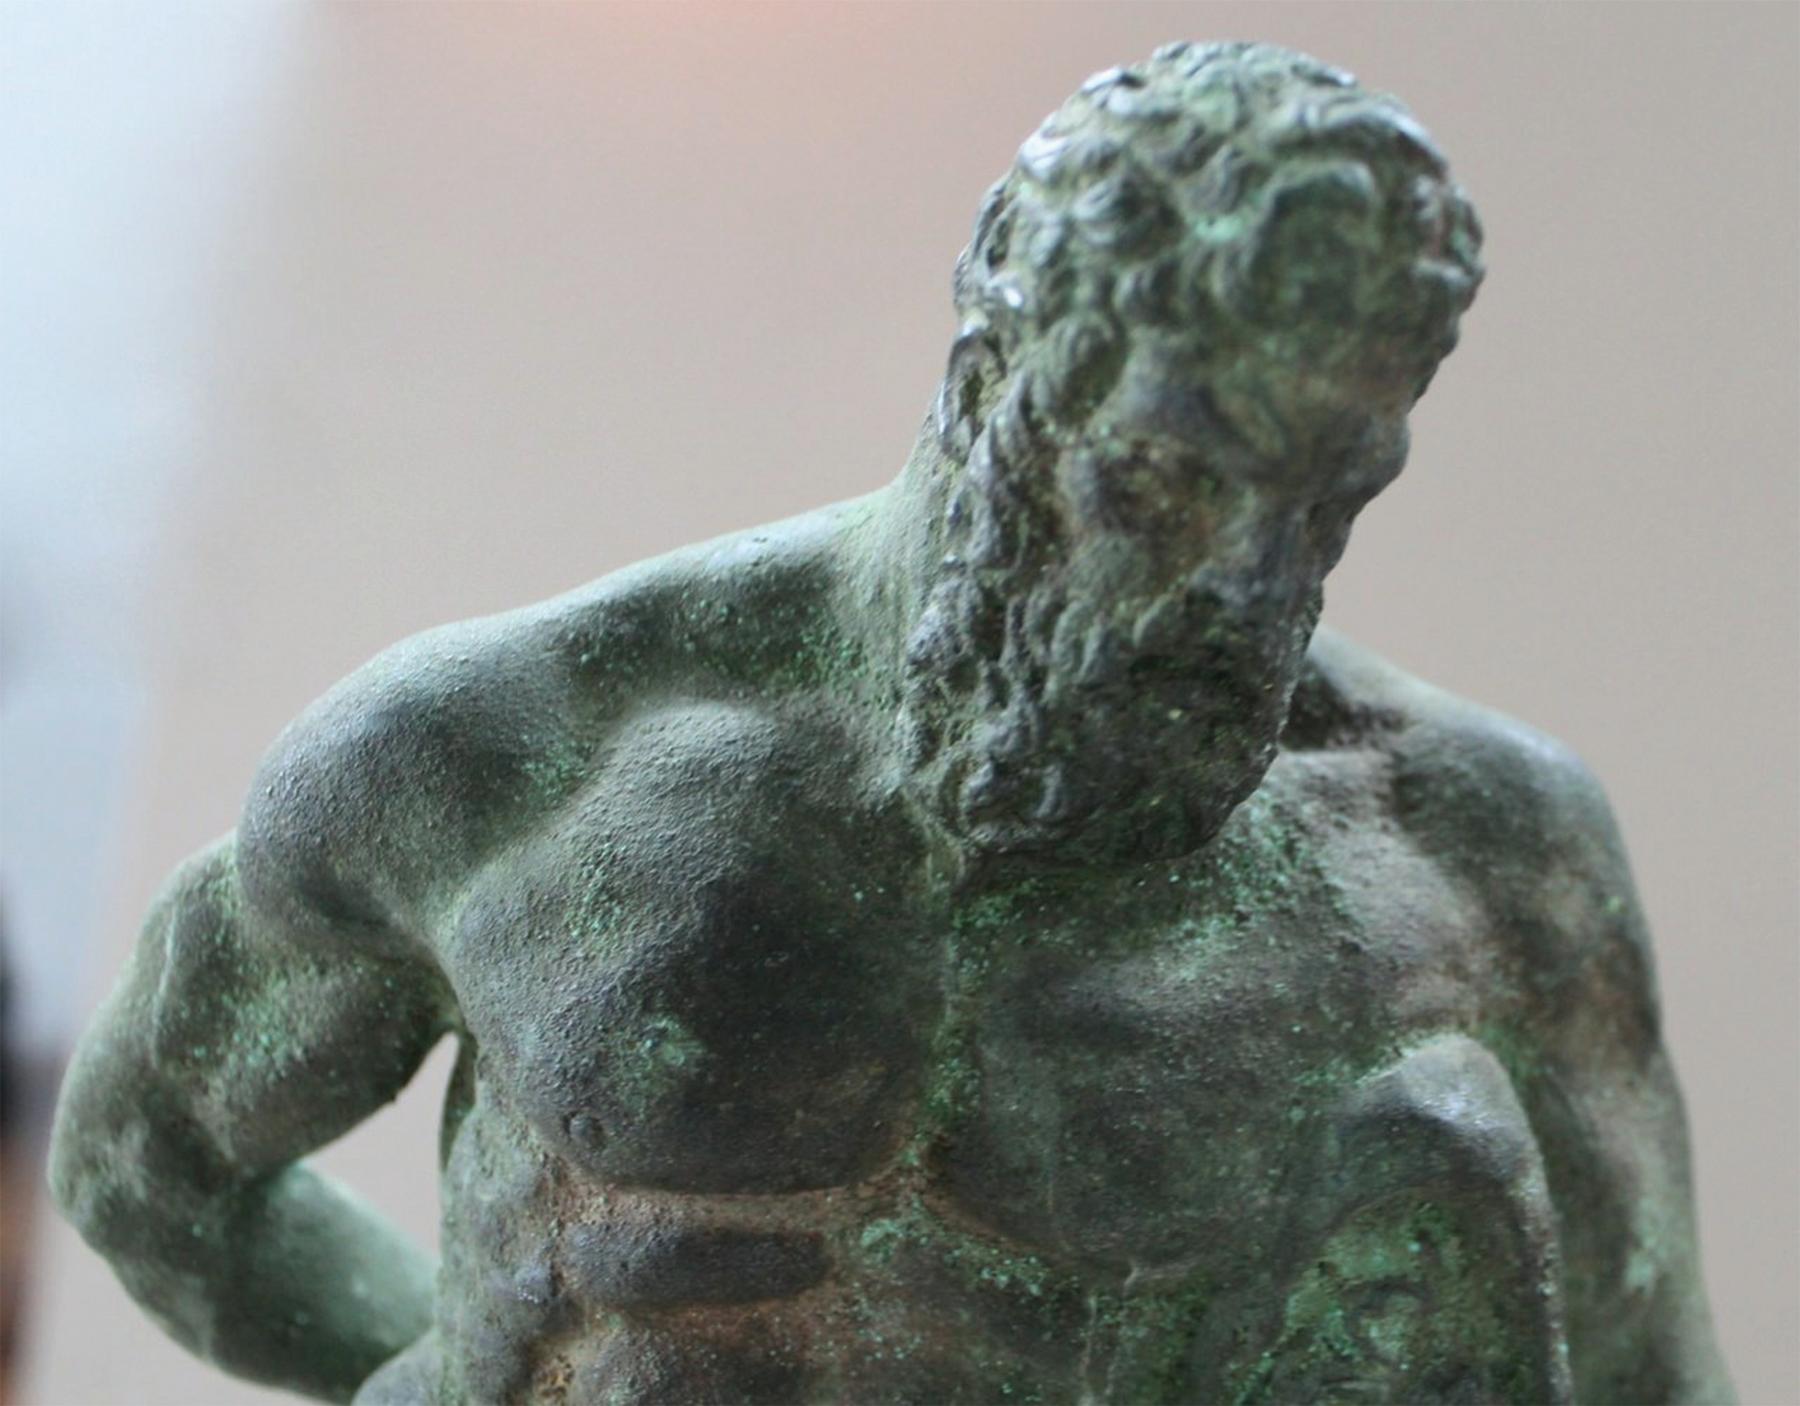 Sculpture en bronze de la fin du XVIIIe siècle d'après l'Hercule de Farnèse
Bronze du Grand Tour avec une fine patine incrustée sur une base en bois plus tardive
16 in. h., total
12,5 in. h., bronze 
3.5 in. h., base

L'Hercule Farnèse est une